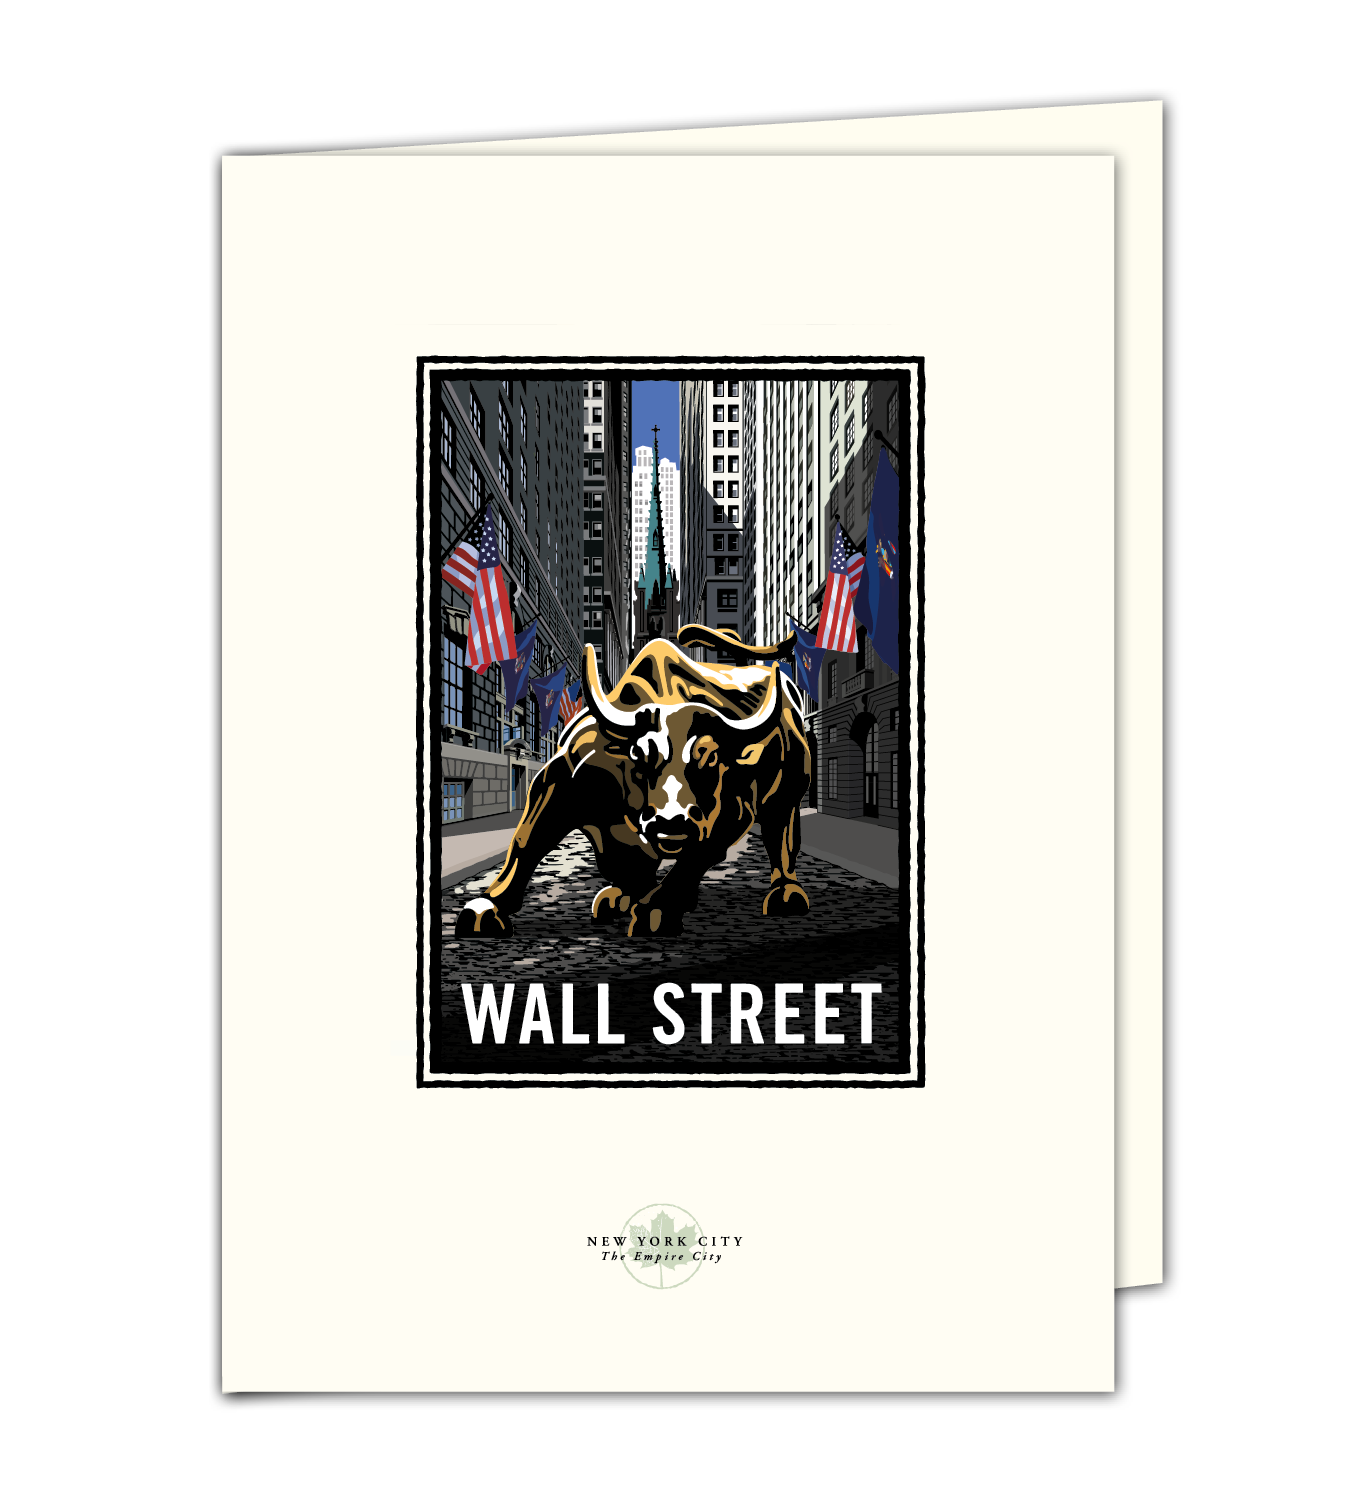 Landmark NY | Charging Bull Wall Street